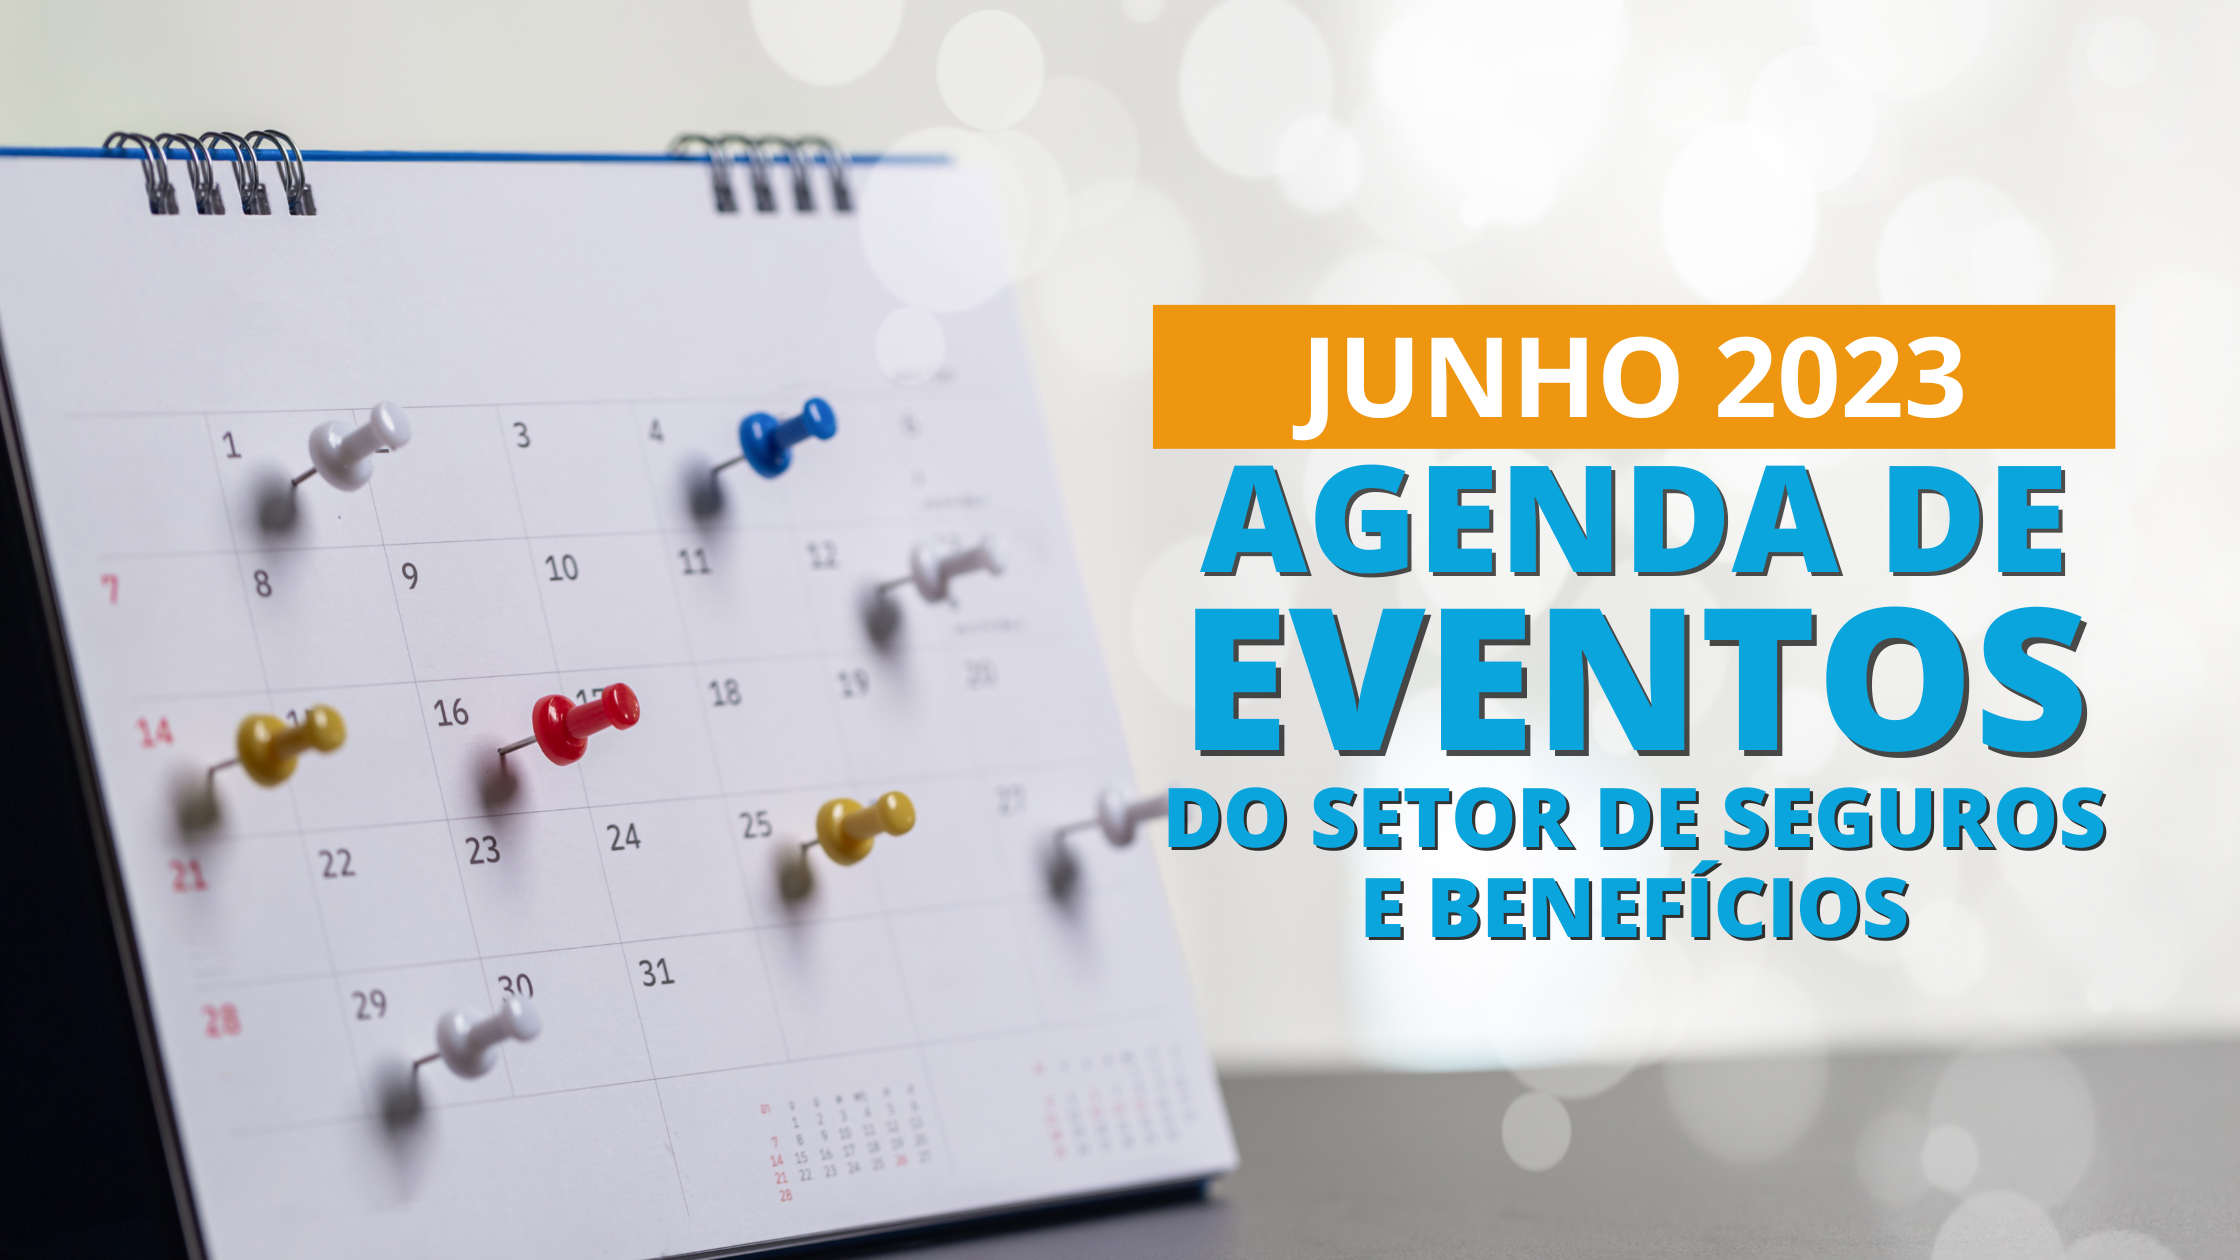 Agenda de eventos (2)